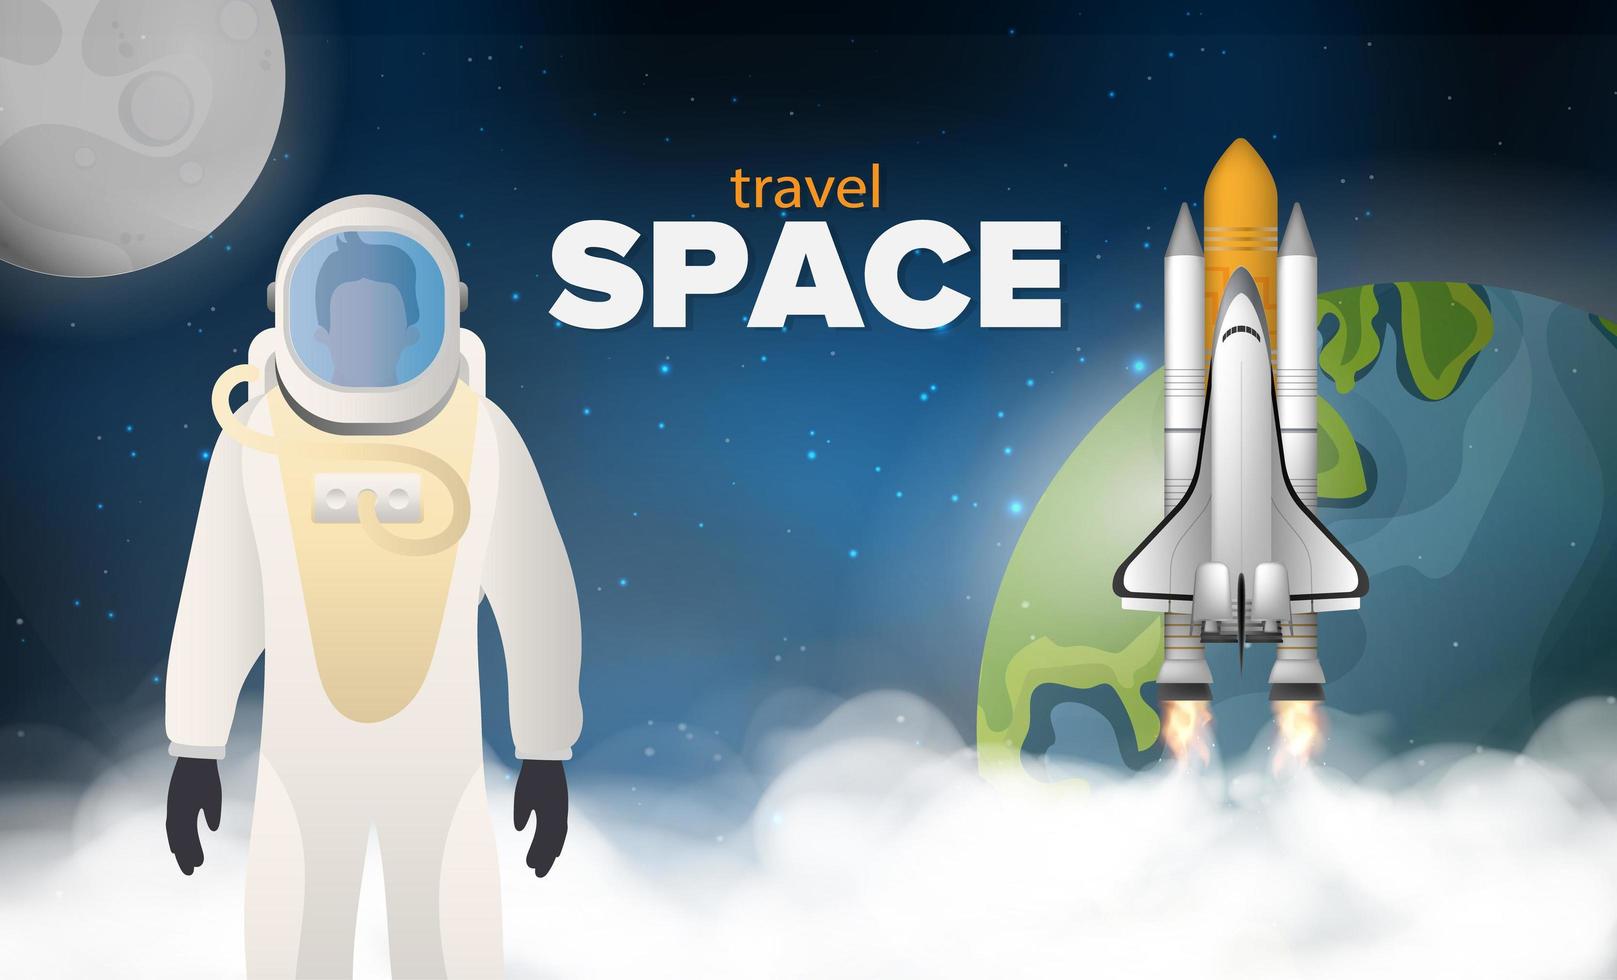 viaggiare nello spazio. un astronauta in tuta protettiva. un razzo o una navetta vola nello spazio sullo sfondo dello spazio, del pianeta terra e della luna. stile realistico. vettore